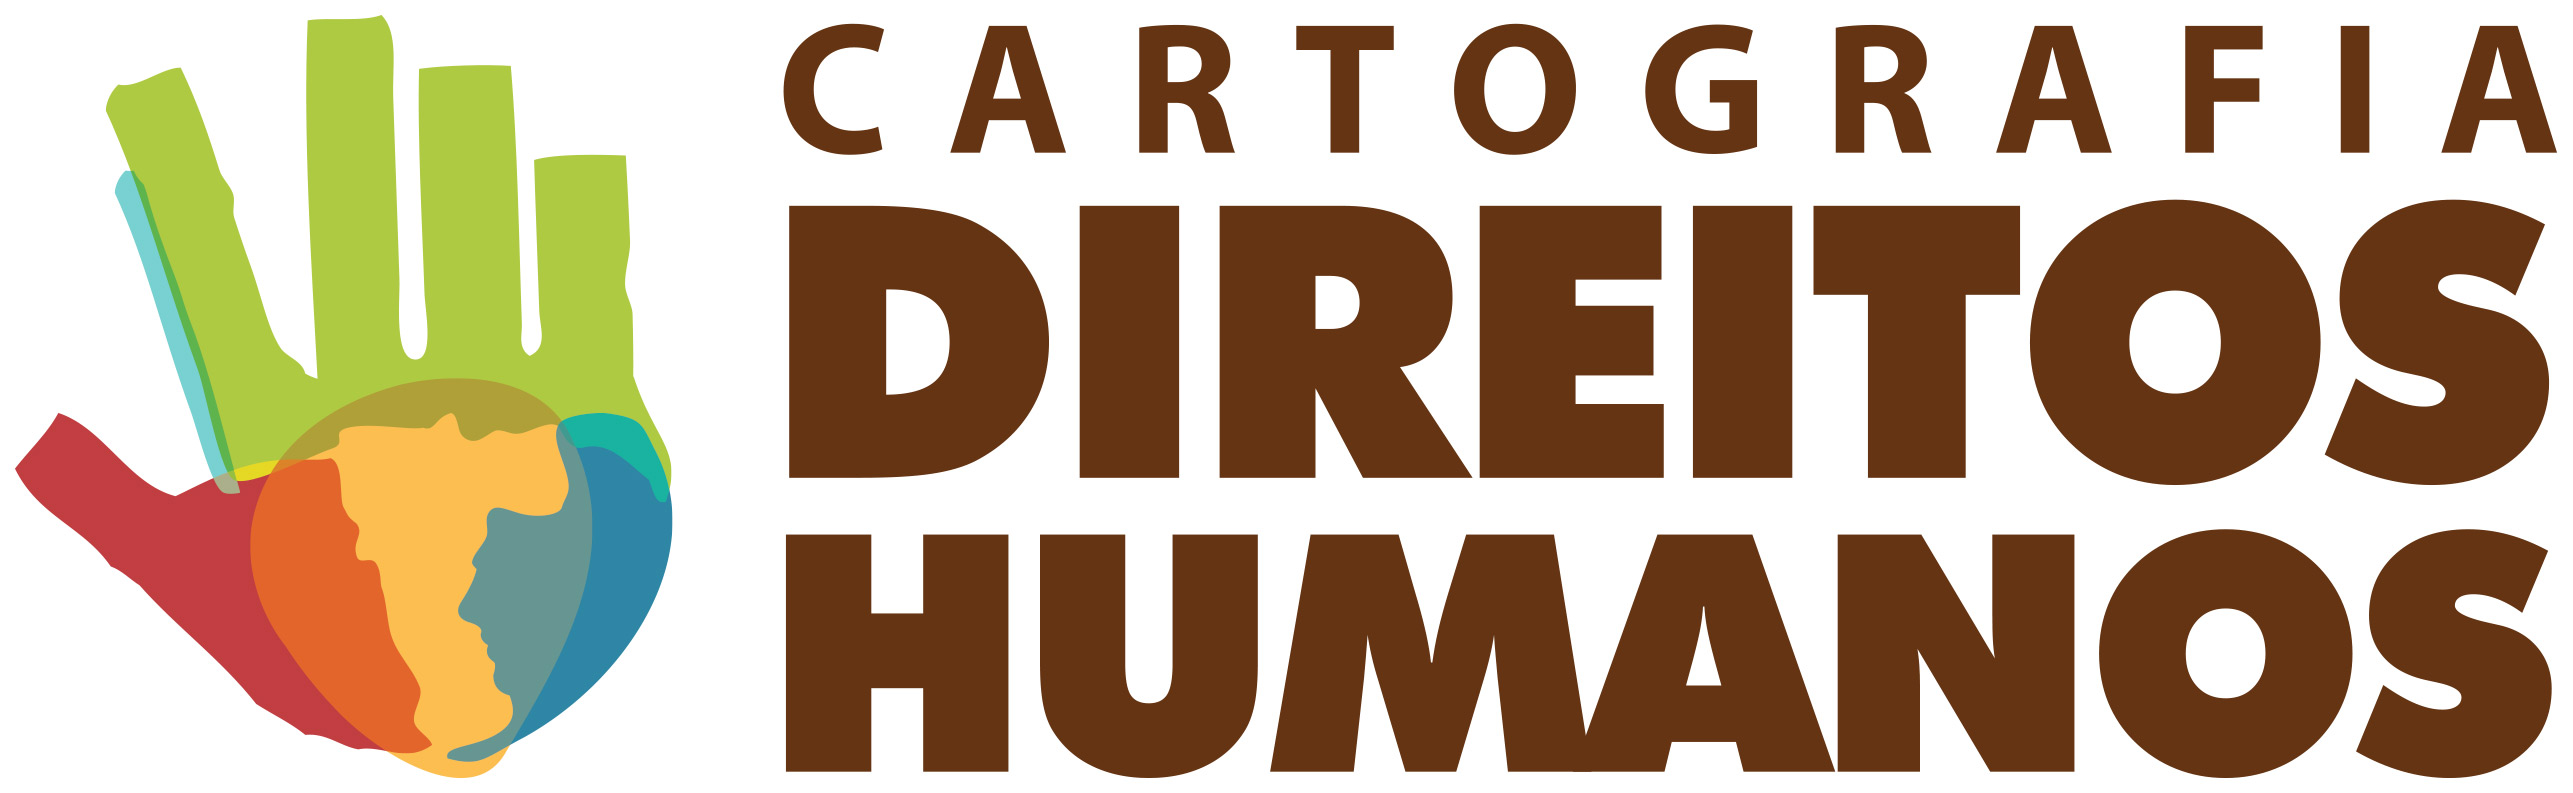 Cartografia dos Direitos Humanos em São Paulo - Logomarca Horizontal